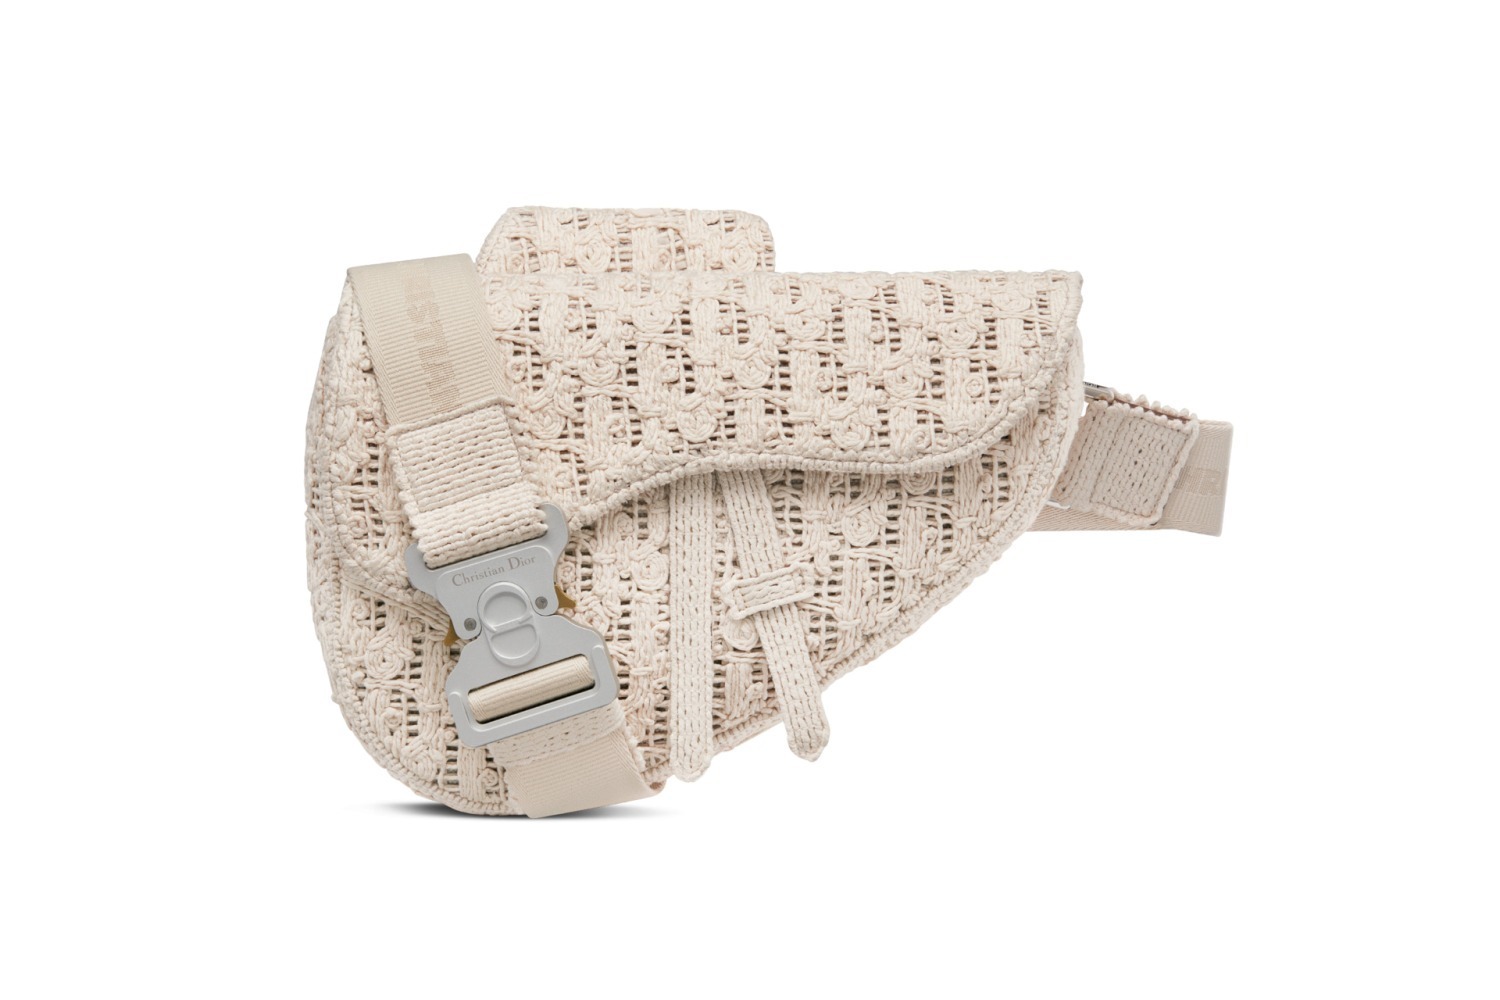 ディオール“マクラメ編み”「ディオール オブリーク」柄のメンズバッグ